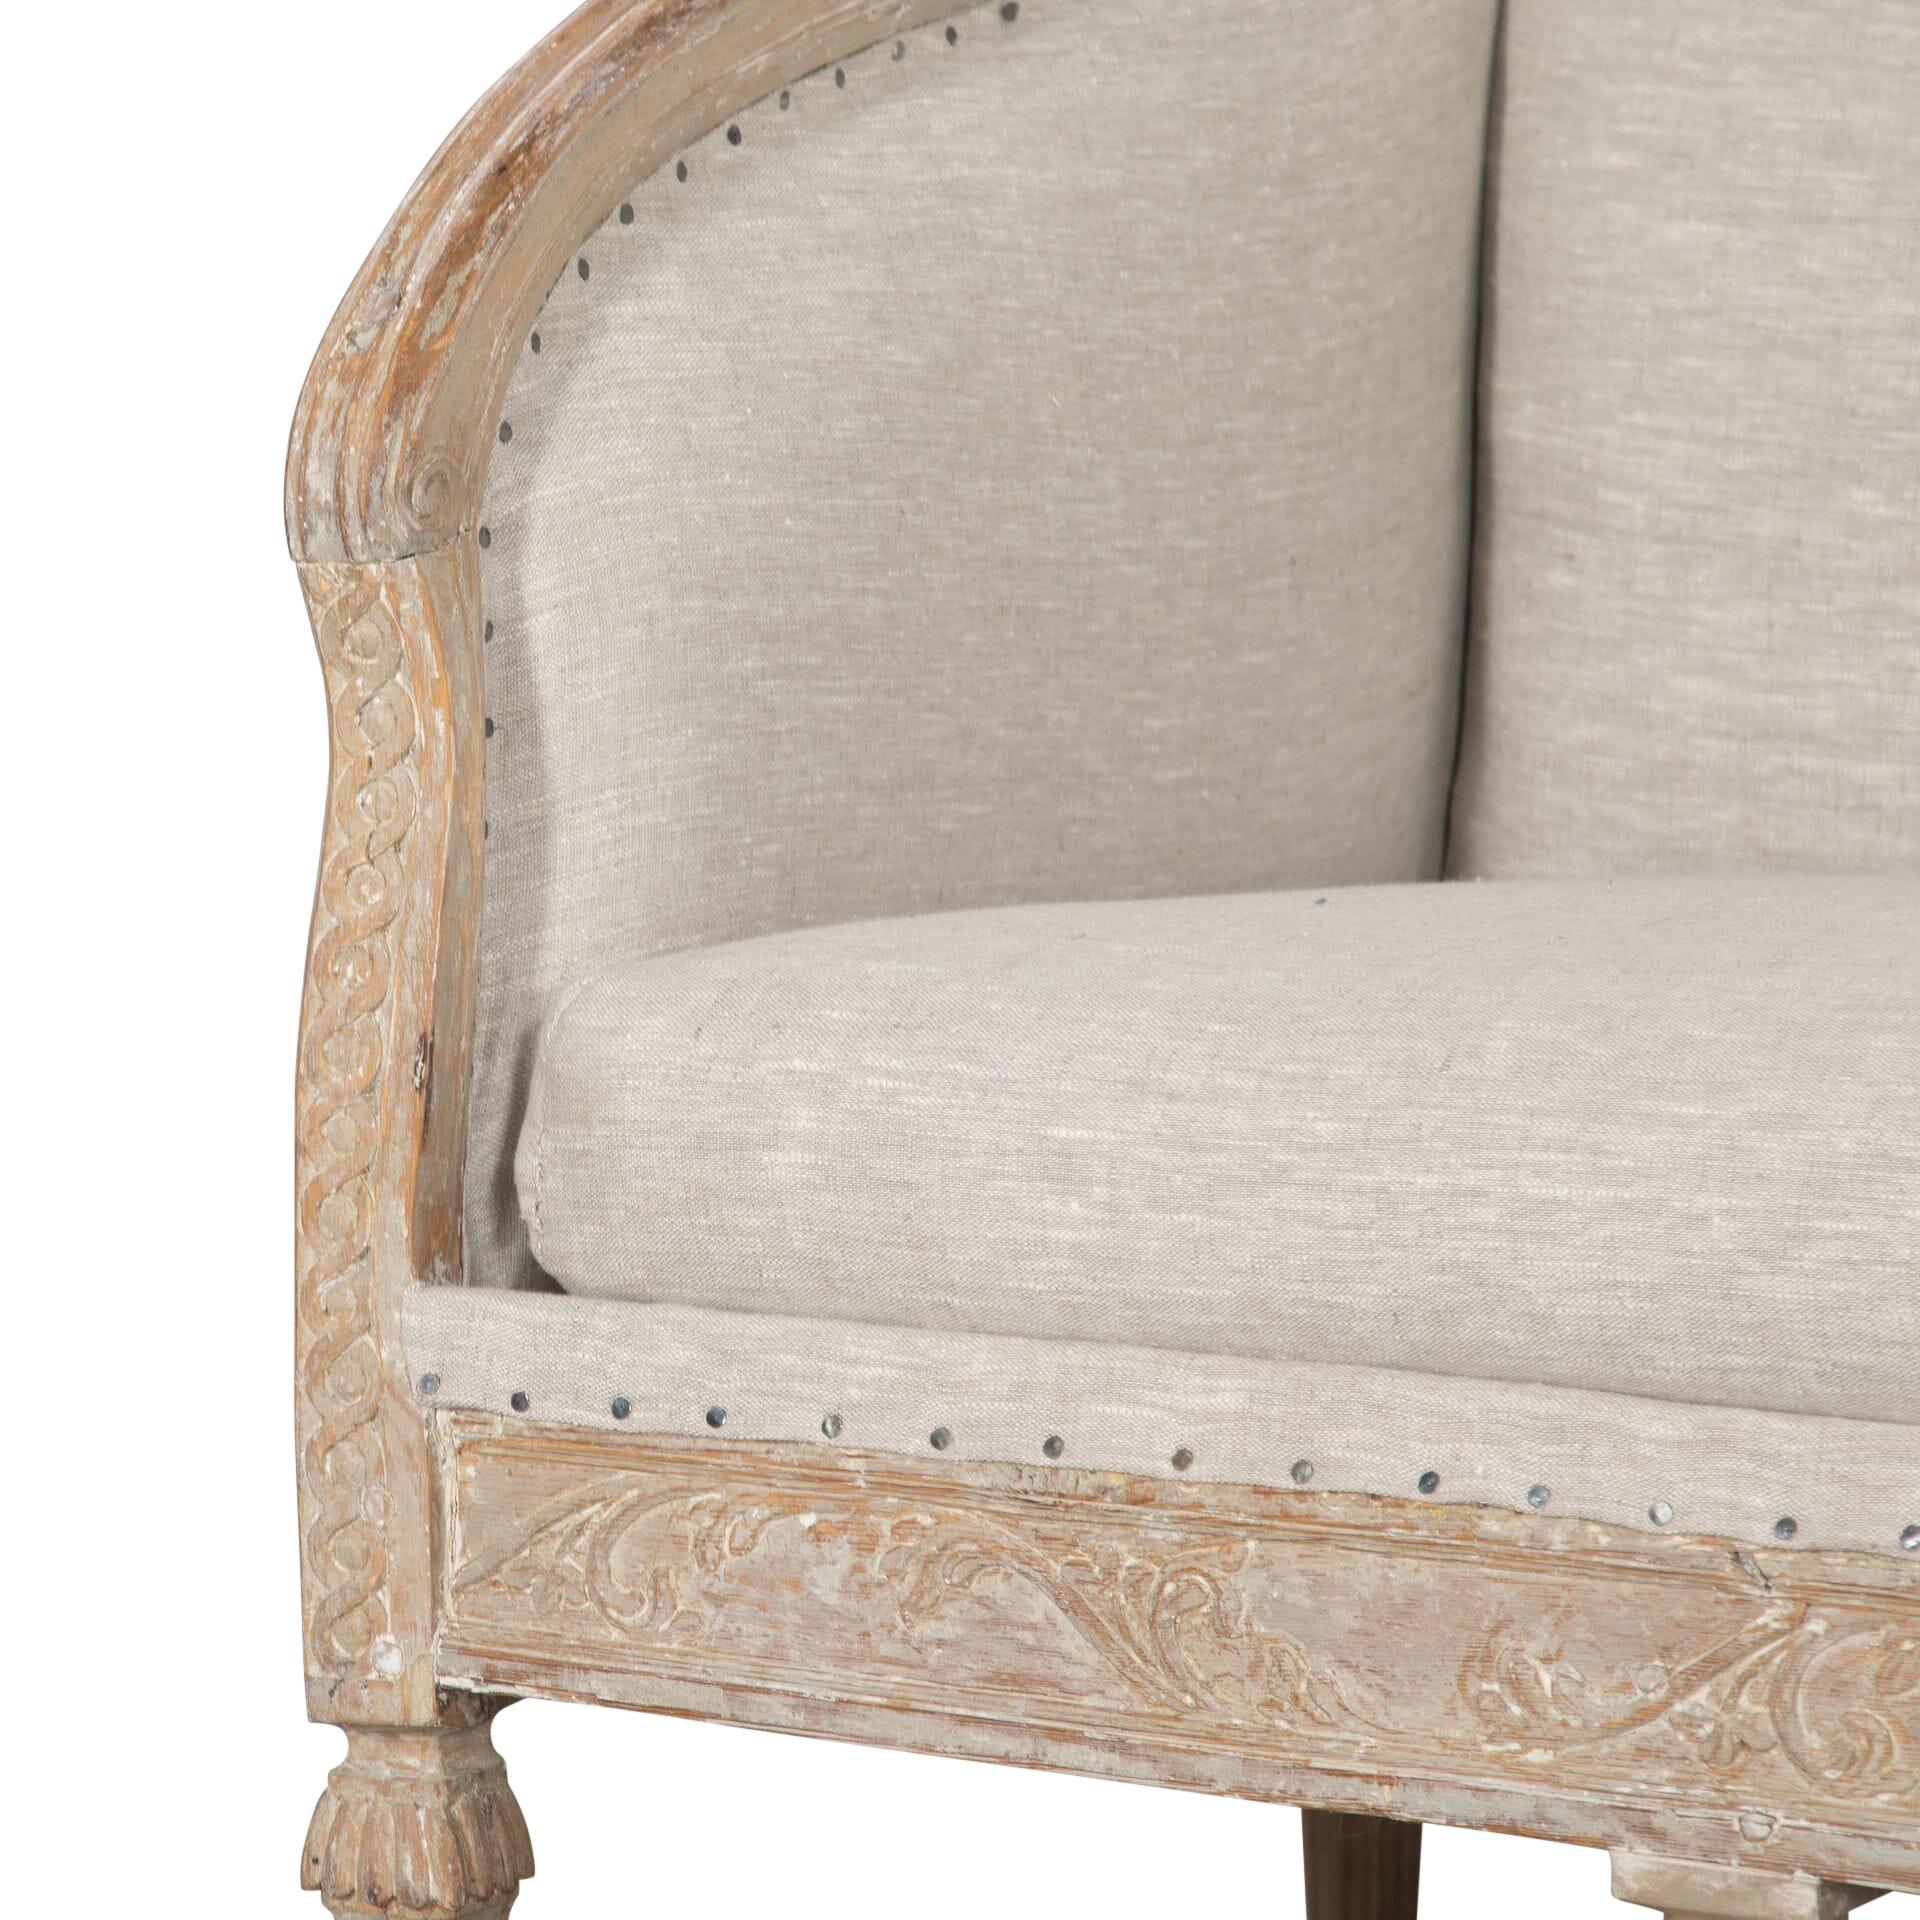 Gustavianisches Sofa aus dem 18. Jahrhundert.
Bis auf die Originalfarbe abgeschabt, mit exquisiten Schnitzereien versehen und kürzlich mit Leinen neu bezogen.